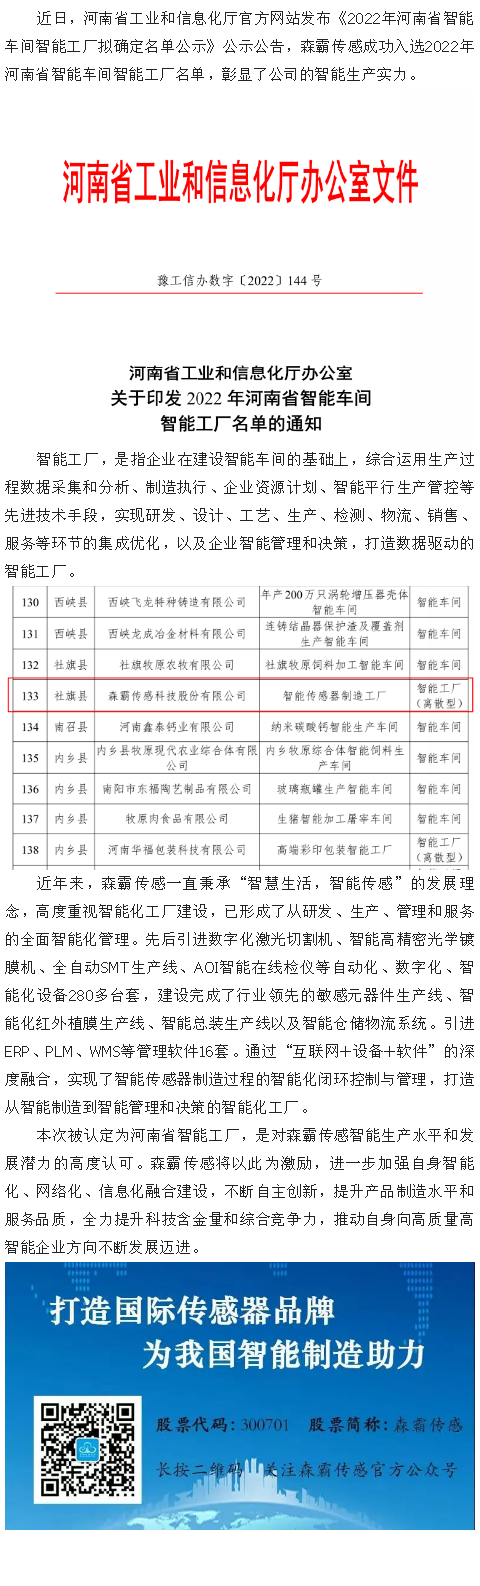 喜报|森霸传感获评“2022年河南省智能工厂”